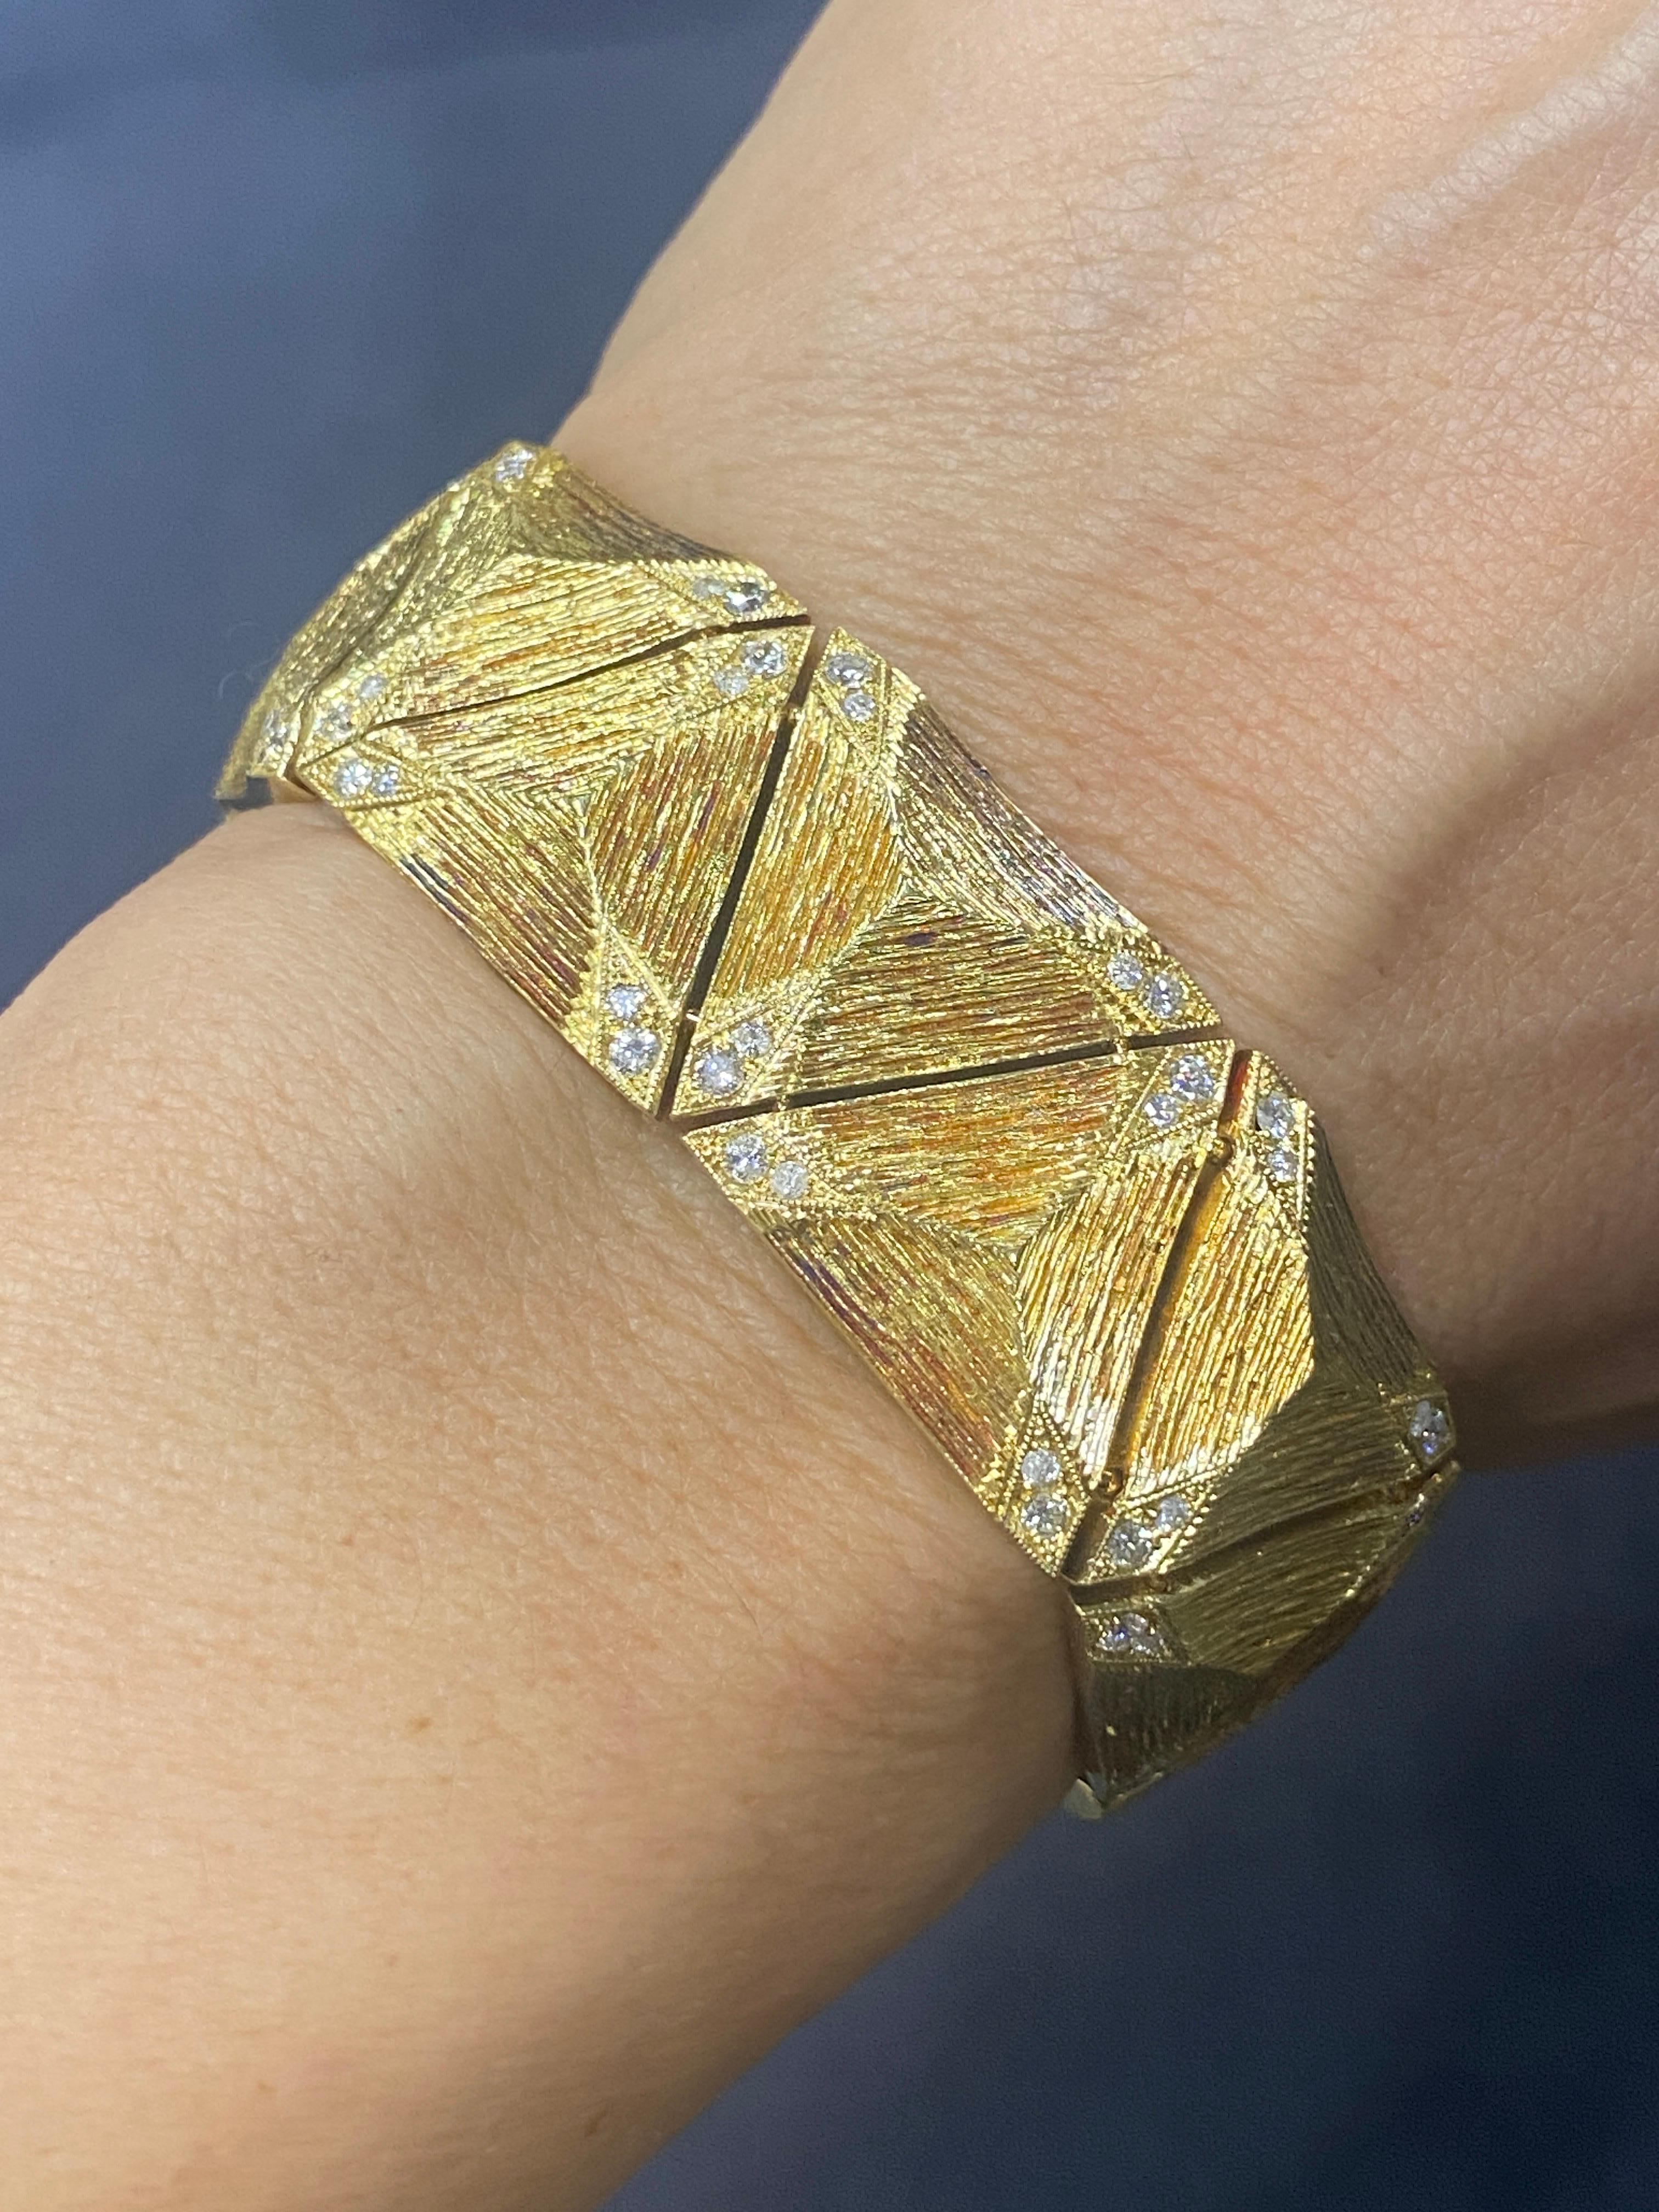 Ce remarquable bracelet en or 18k des années 1970 est entièrement réalisé et gravé à la main. Les coins de chaque pièce triangulaire sont ornés de petits diamants qui accentuent l'éclat général du bracelet. Bien qu'il s'agisse d'une pièce lourde,